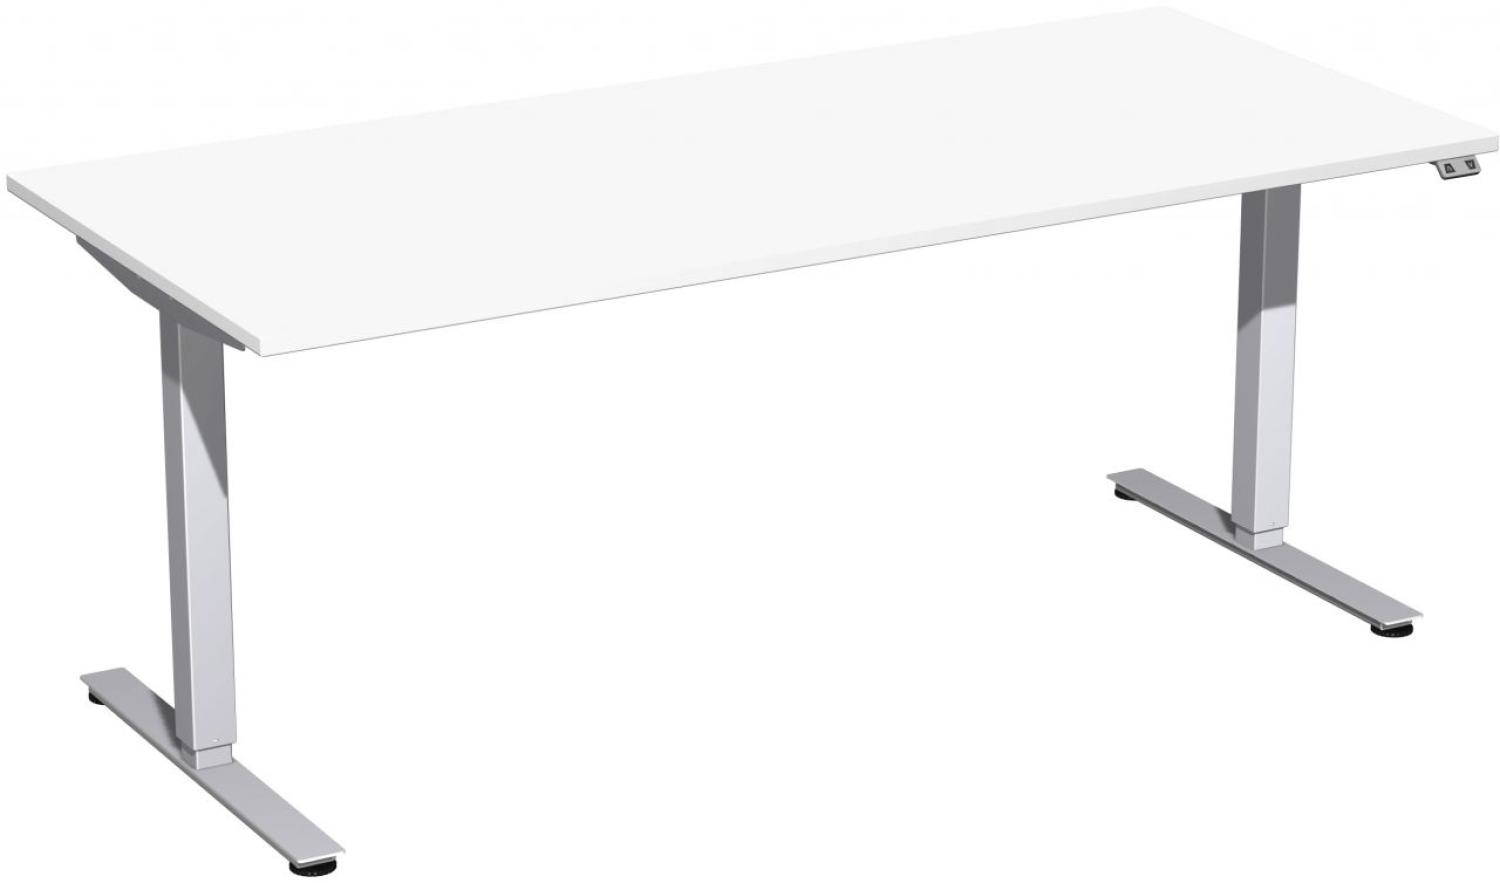 Elektro-Hubtisch 'Smart', höhenverstellbar, 180x80x70-120cm, gerade, Weiß / Silber Bild 1